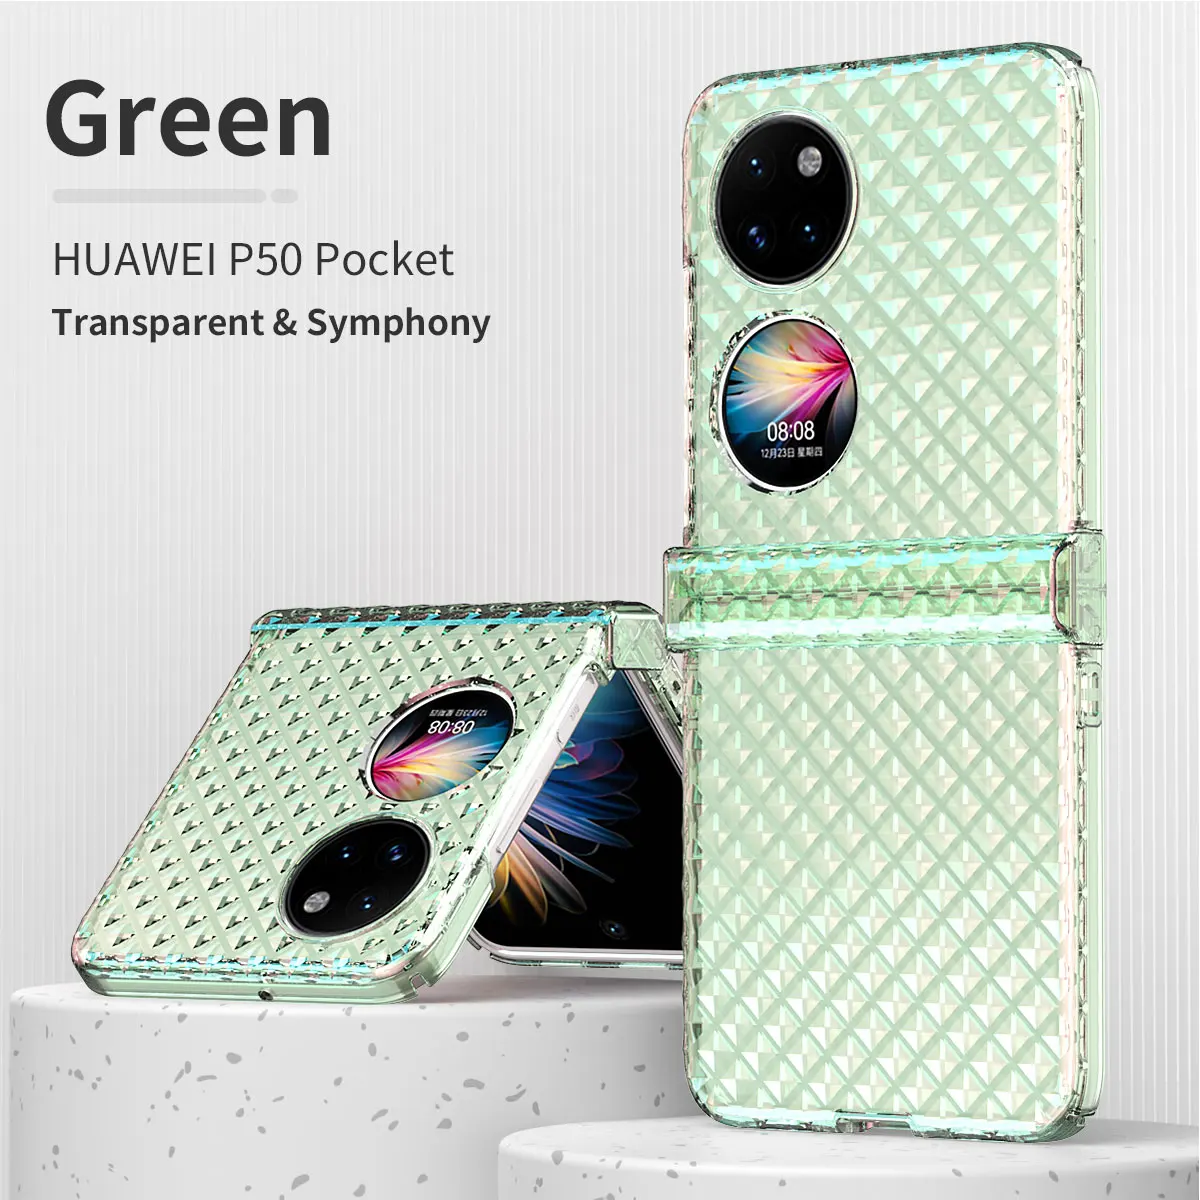 

Карманный чехол для телефона Huawei P50, роскошные прозрачные чехлы с симфонией для Huawei P50, карманный защитный противоударный чехол